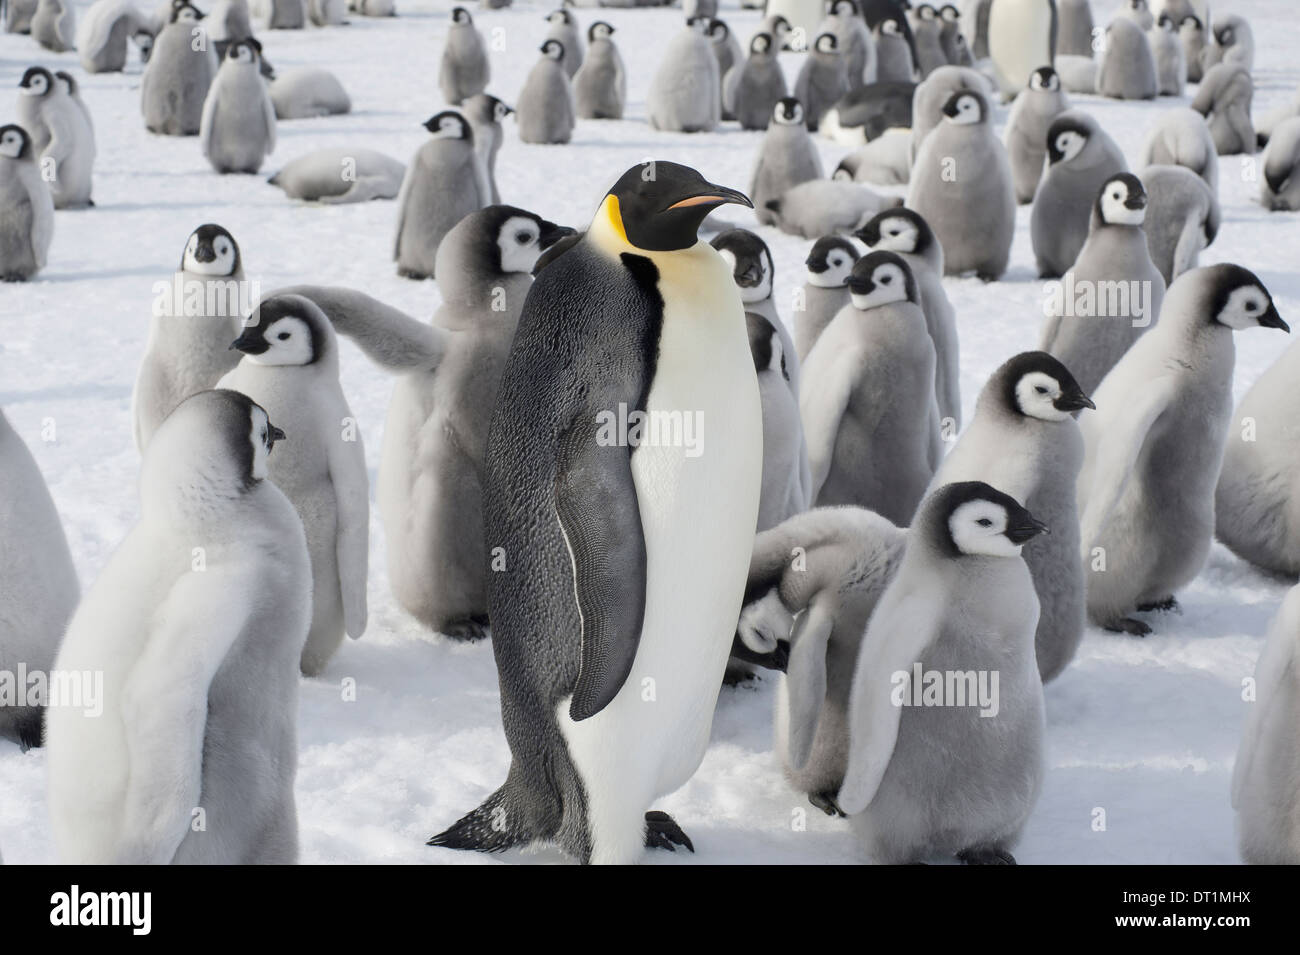 Un groupe de manchots empereurs un animal adulte et un grand groupe de penguin chicks une colonie de reproduction Banque D'Images